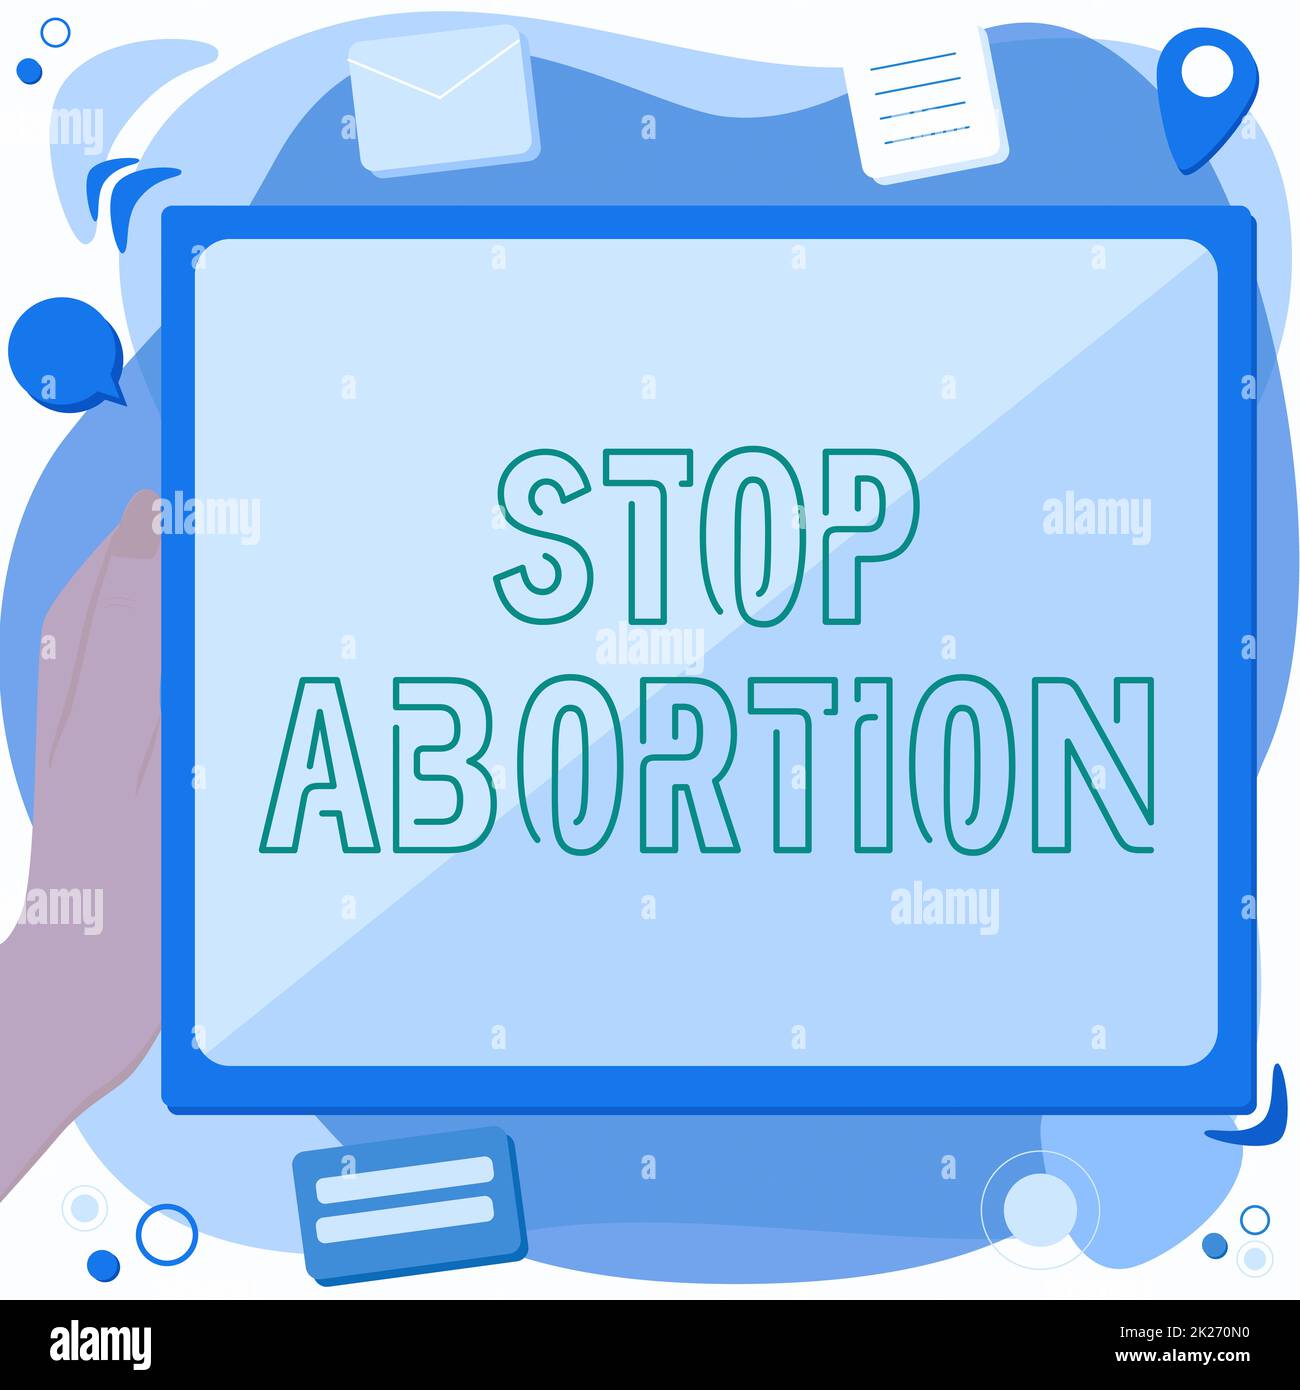 Inspiration mit dem Zeichen Abbruch stoppen. Konzeptfoto gegen die Praxis der Abtreibung Prolife-Bewegung Abstract Löschen des Browserverlaufs, Bearbeiten Organisieren von Online-Dateien. Stockfoto